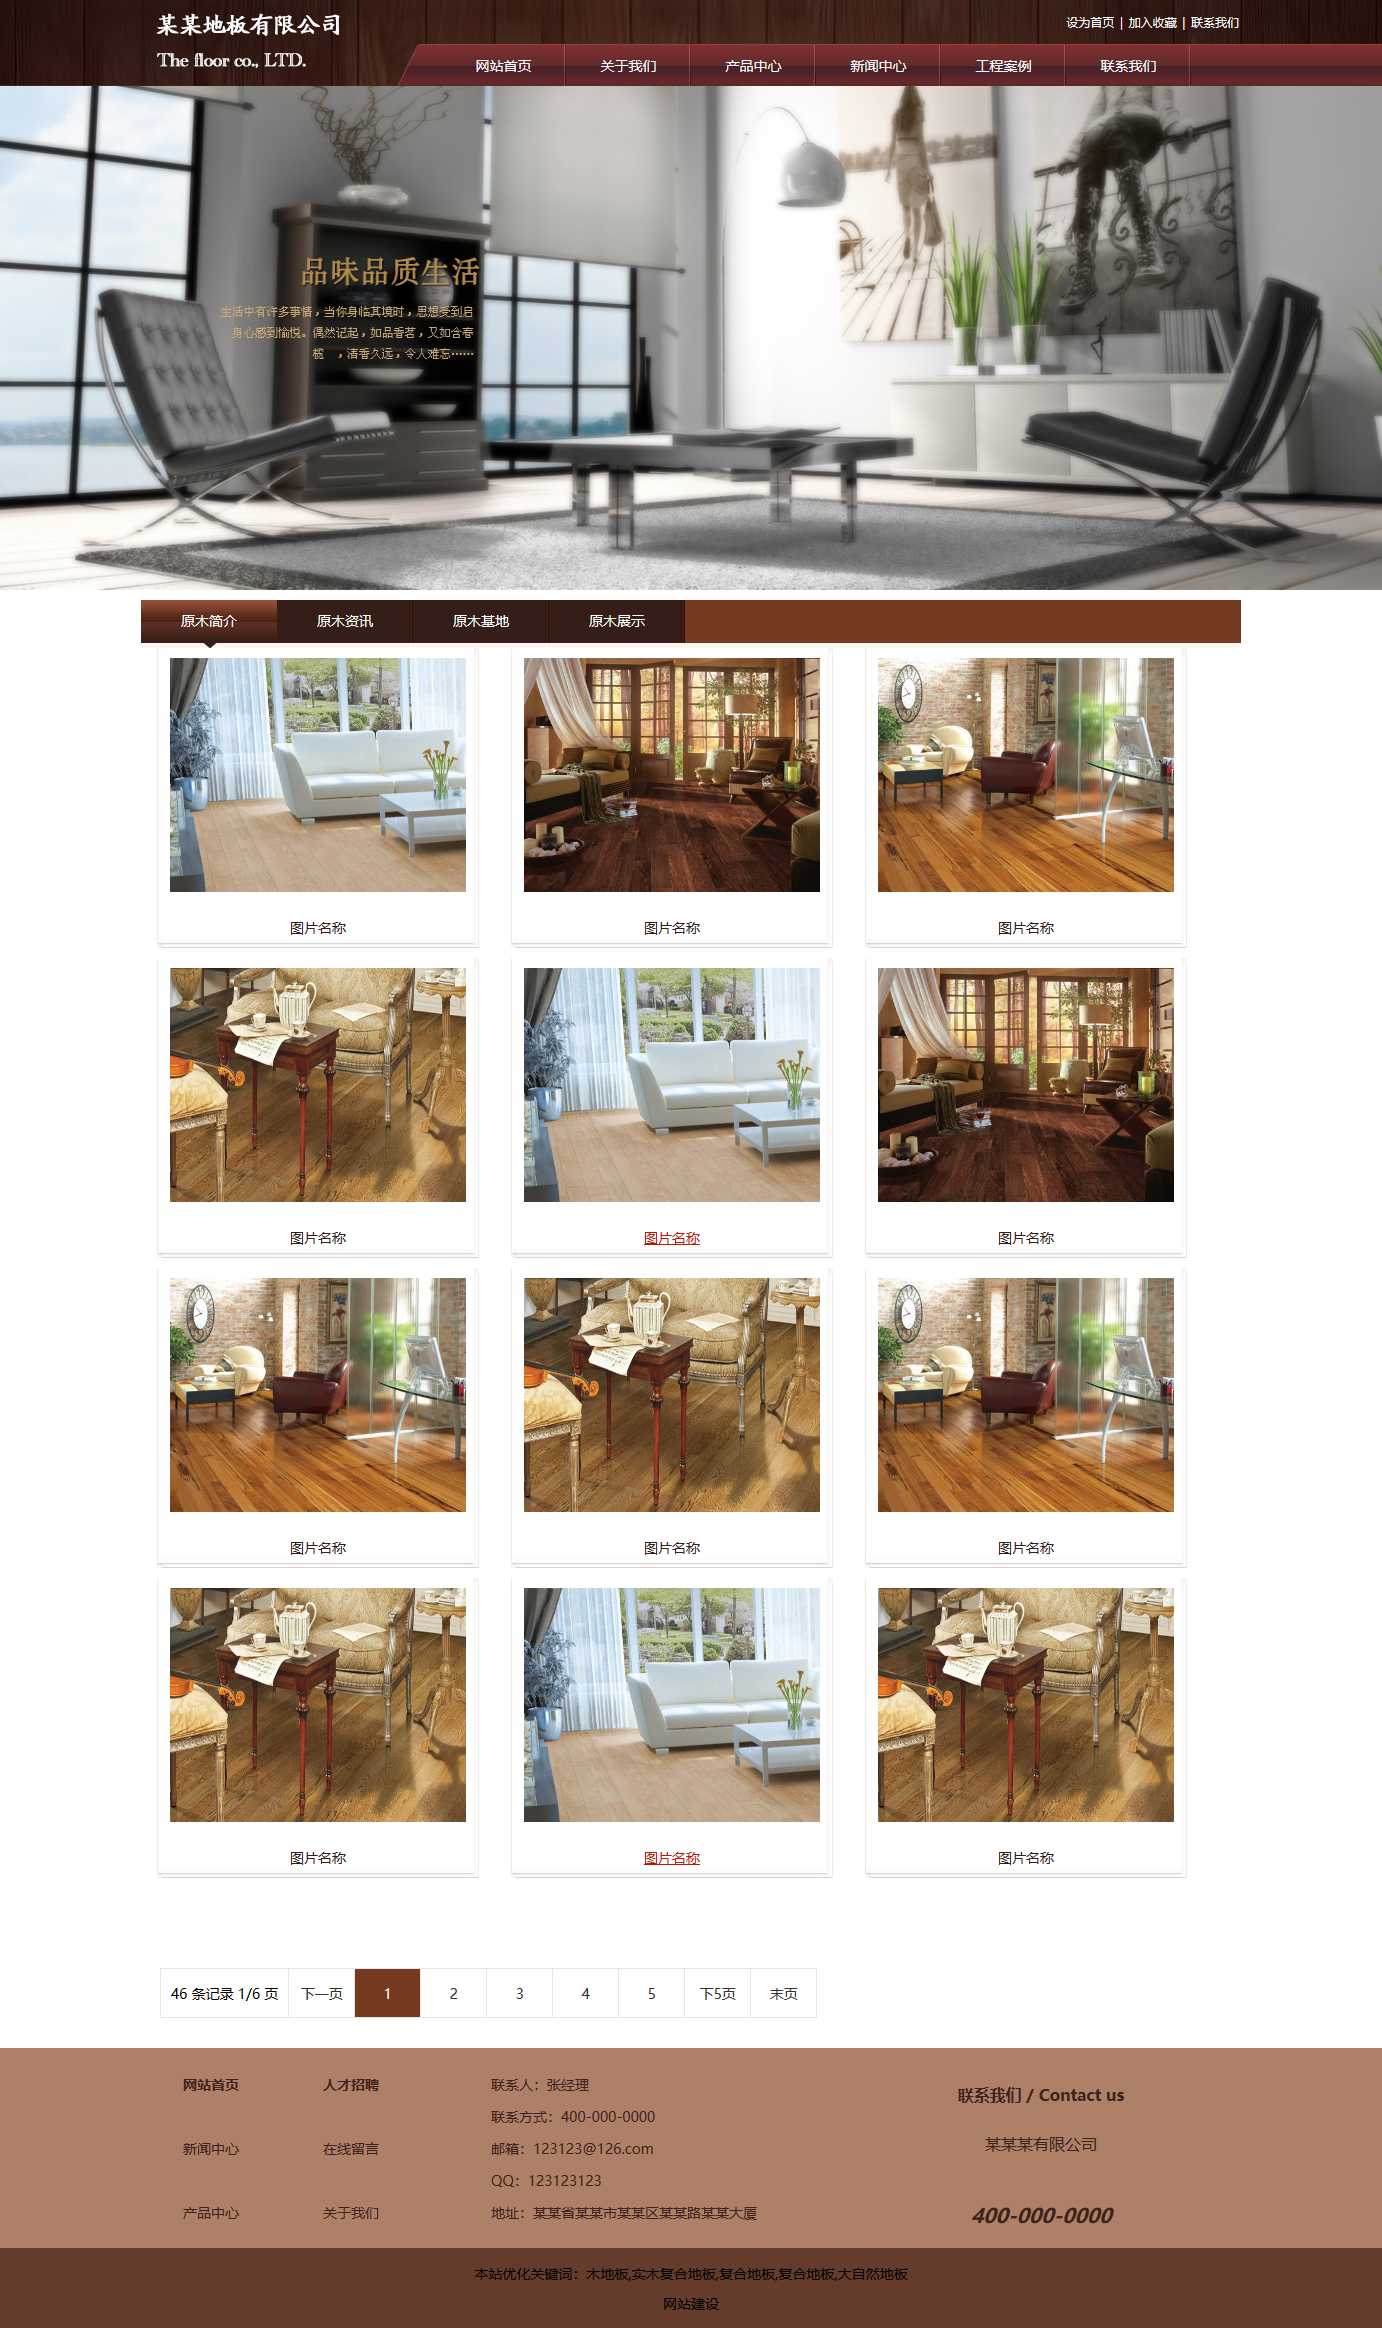 地板,家具家居网站图片列表效果图